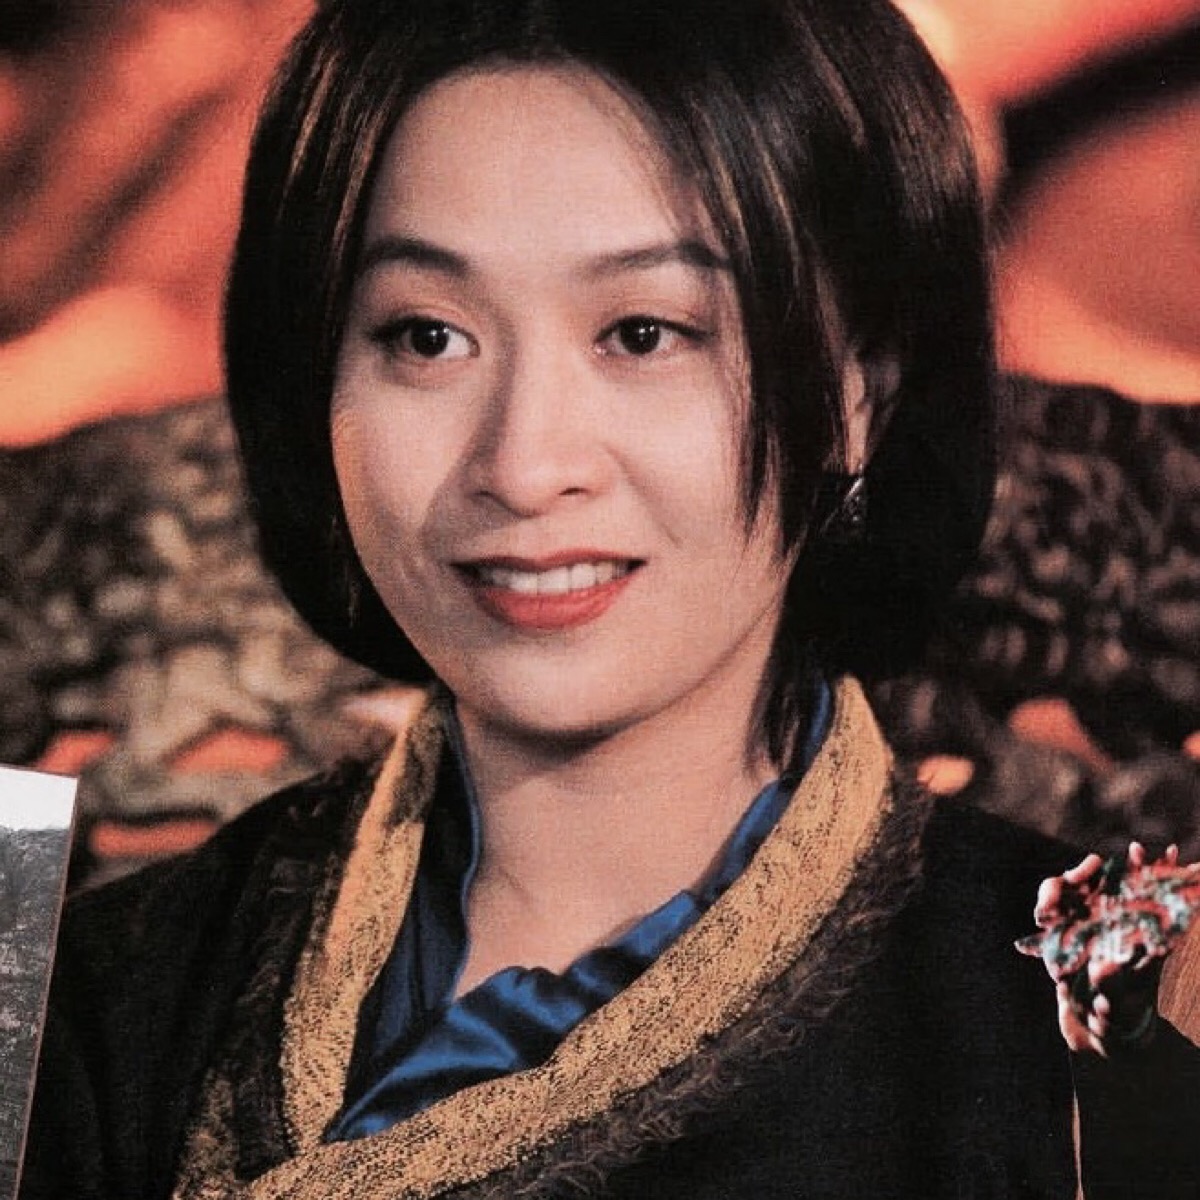 刘嘉玲 1965年12月生于中国江苏 自截女头